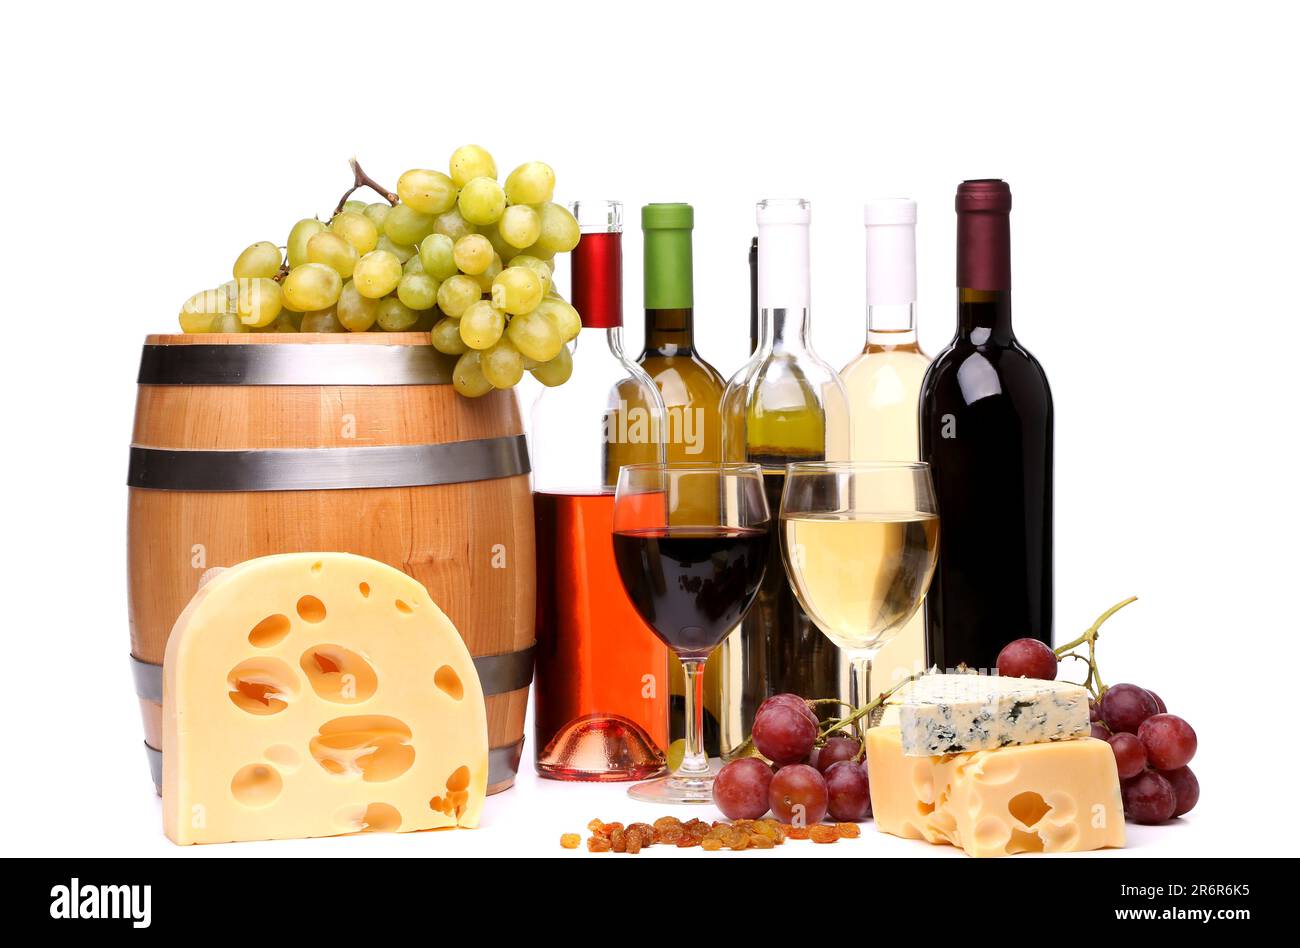 tonneau, fromages, bouteilles et verres de vin et raisins mûrs Banque D'Images